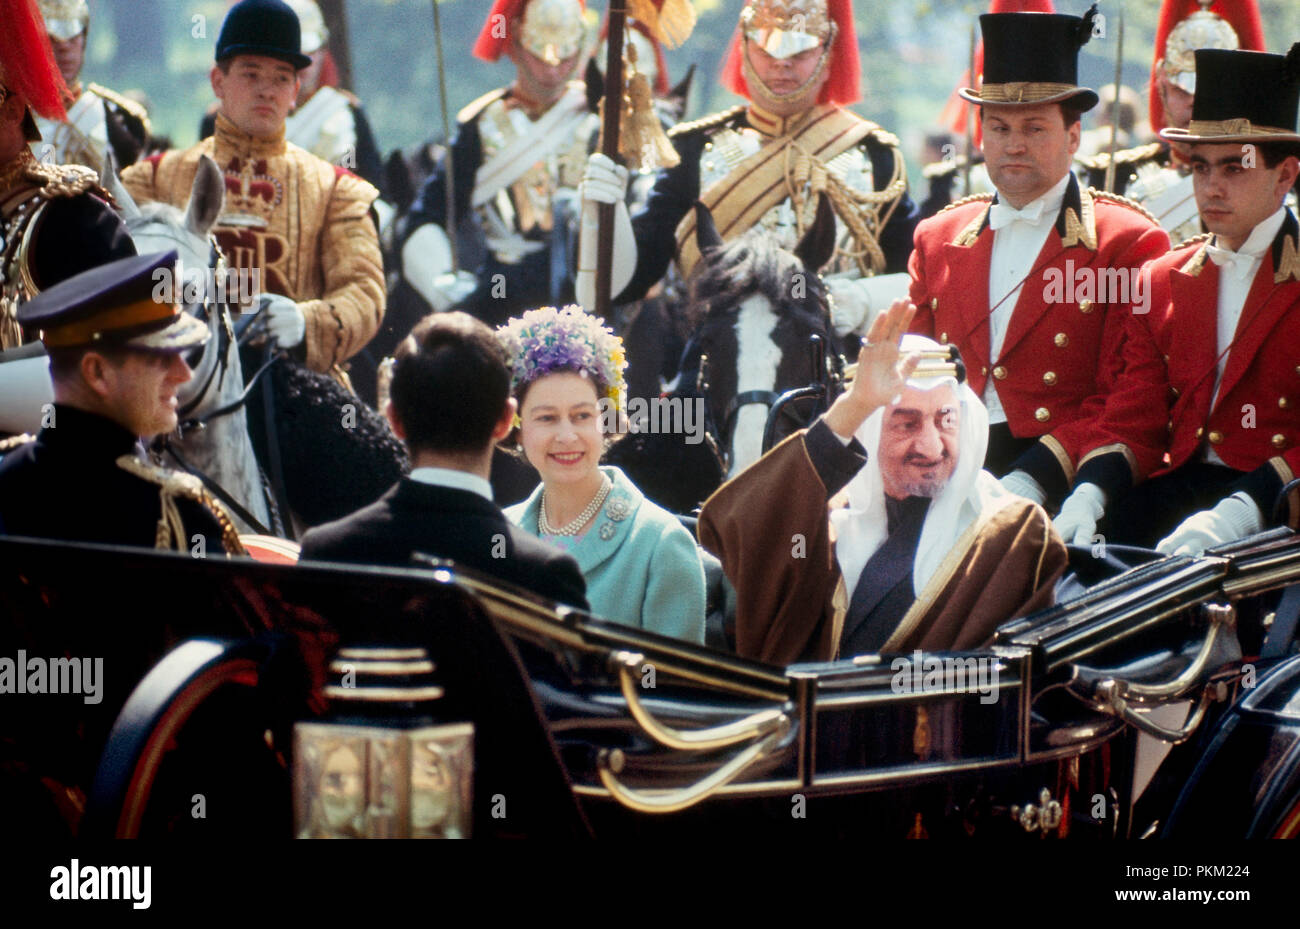 Une visite d'État en mai ; 1967 ; Sa Majesté la Reine Elizabeth II, accompagnée de son mari, le duc d'Edinbugh (Prince Phillip), balades en chariot ouvert avec le roi Faisal d'Arabie saoudite sur le Mall, vers le palais de Buckingham. Ils sont escortés par des gardes en tenue de cérémonie. Banque D'Images